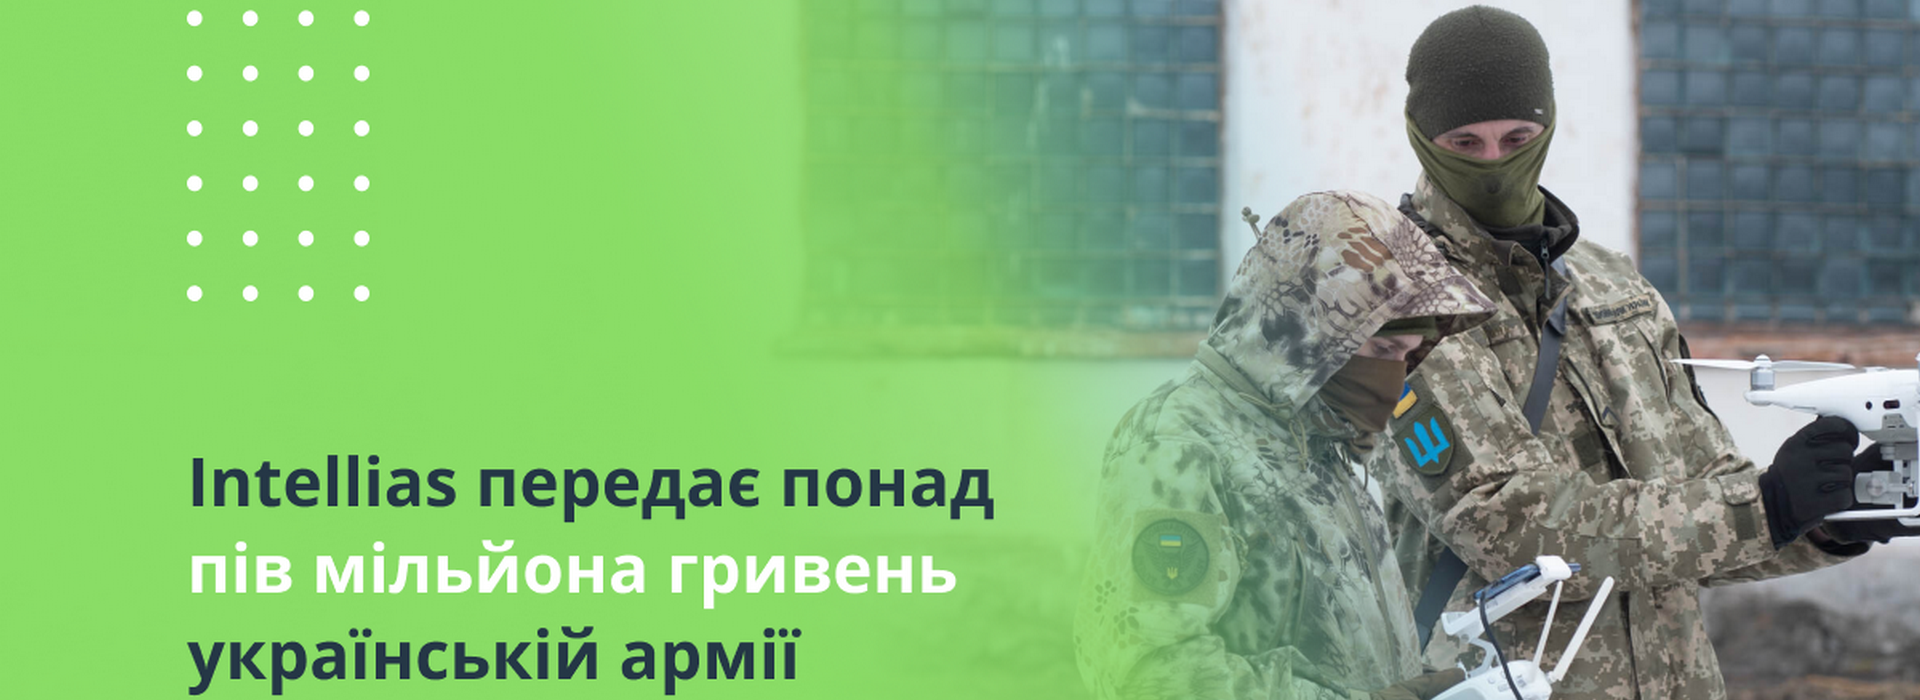 Intellias передає понад півмільйона гривень українській армії